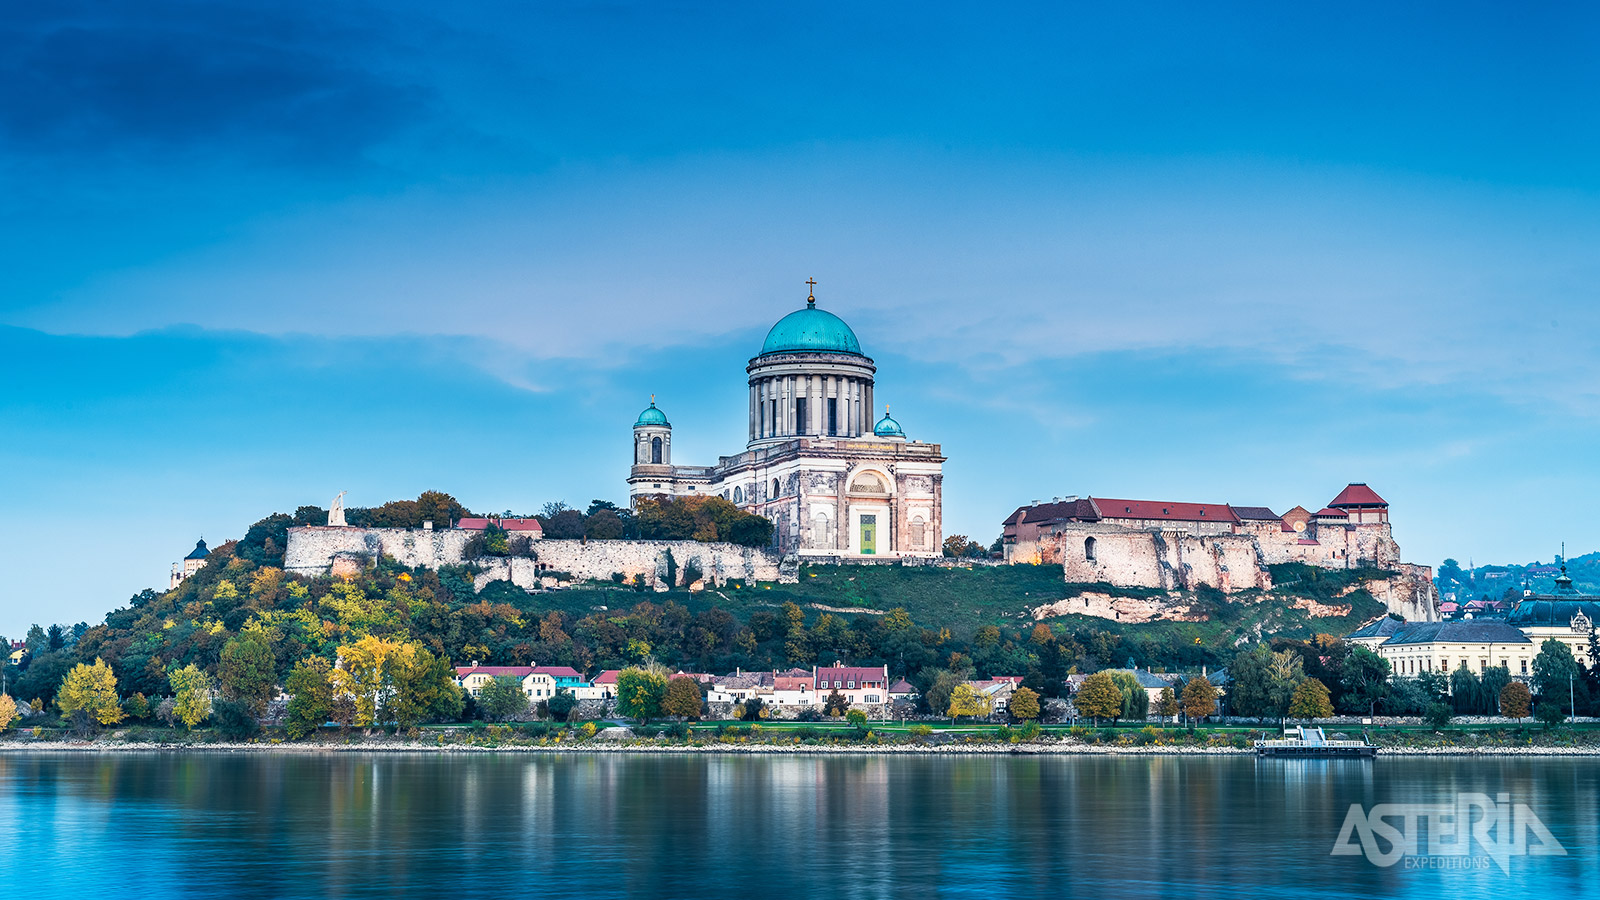 De enorme Basiliek van Esztergom is van mijlenver te zien en bepaalt de skyline van de stad